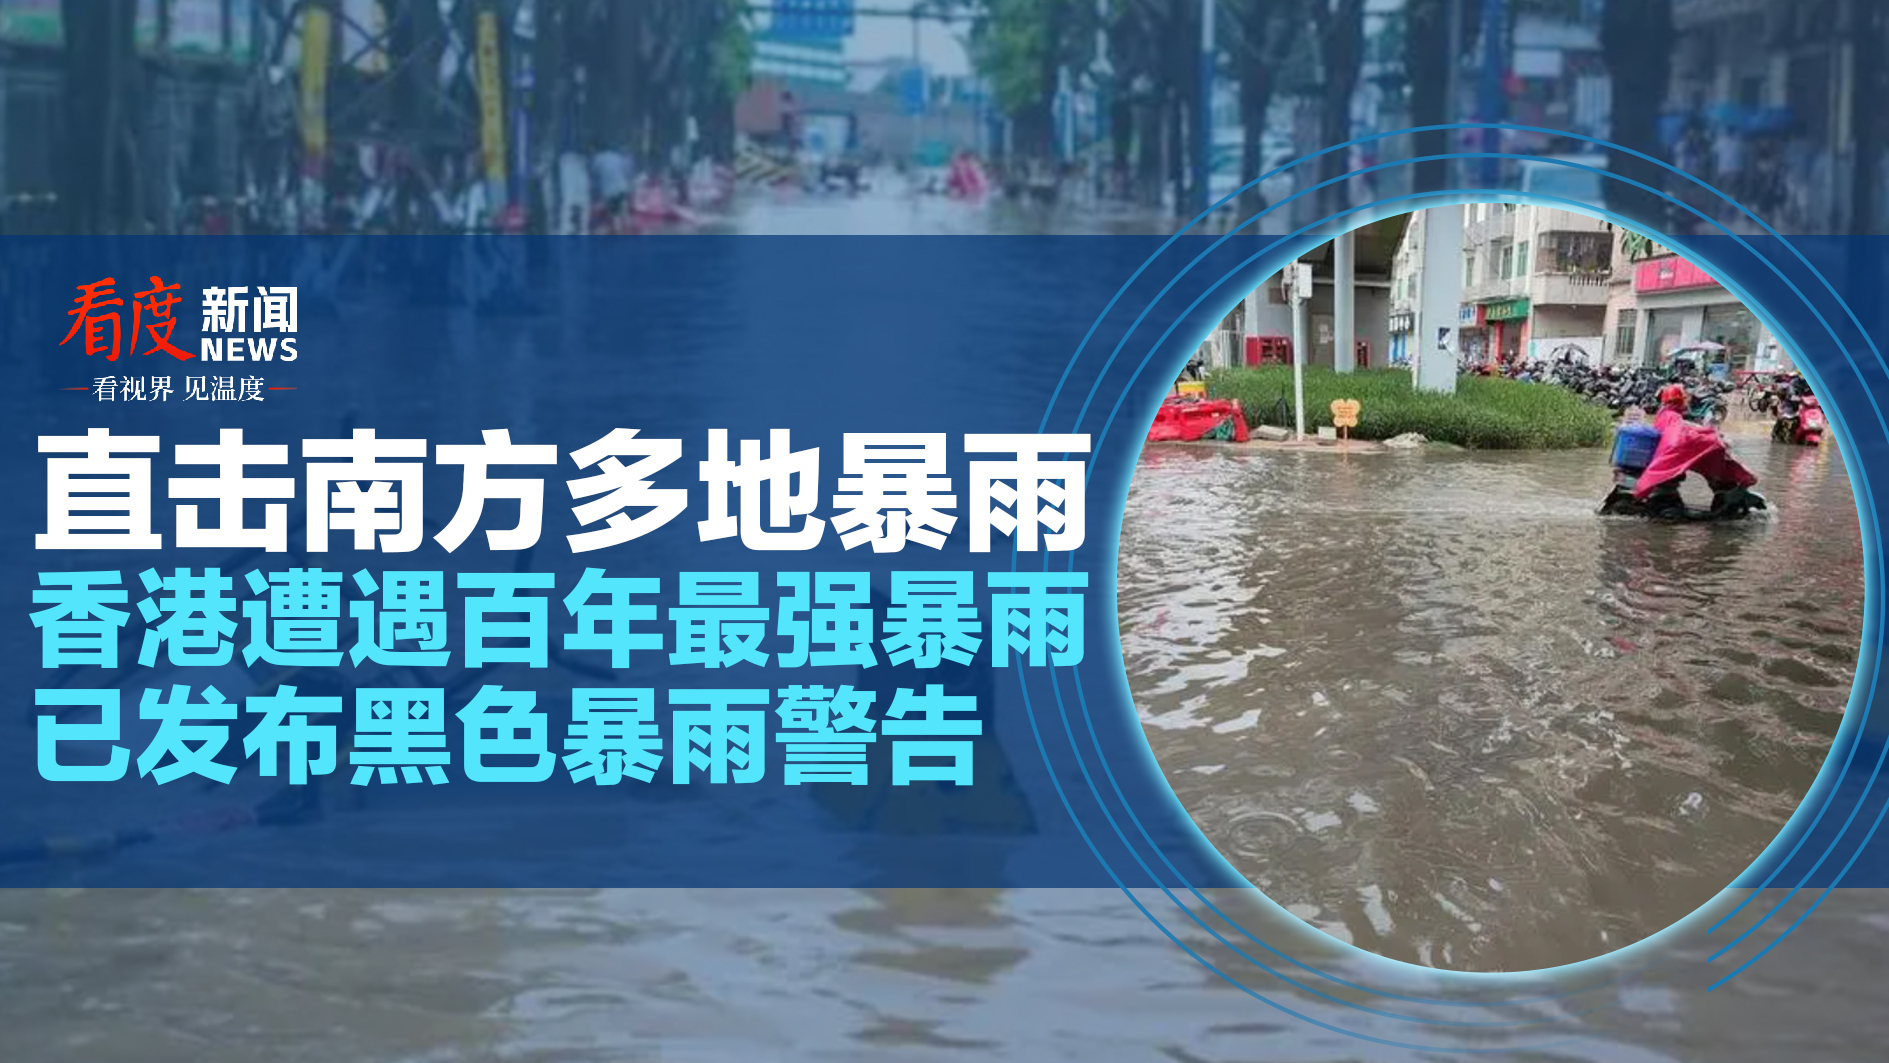 黑色暴雨仍然生效 極端情況至少維持至中午 現時多區出現水浸情況 | 香城公民媒體 Hong Kong Citizen Media